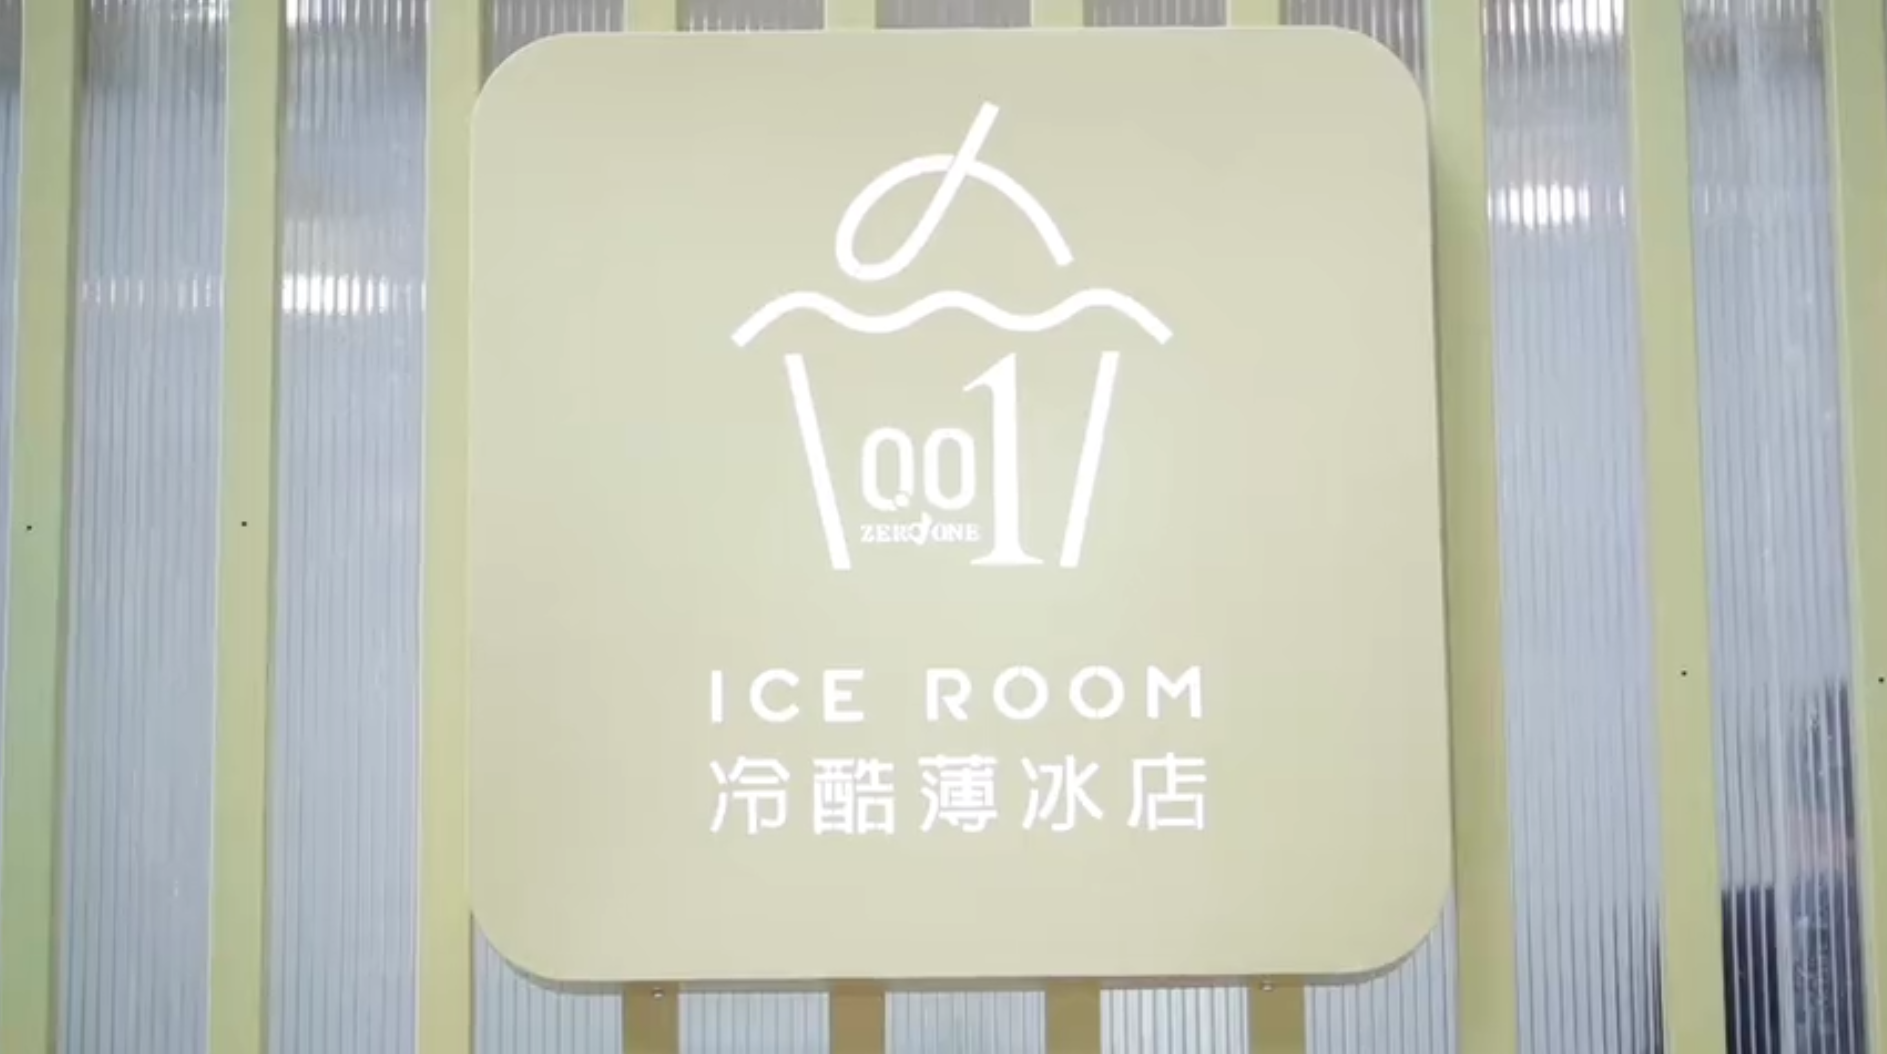 冈本0.01「冷酷薄冰店」 冈本